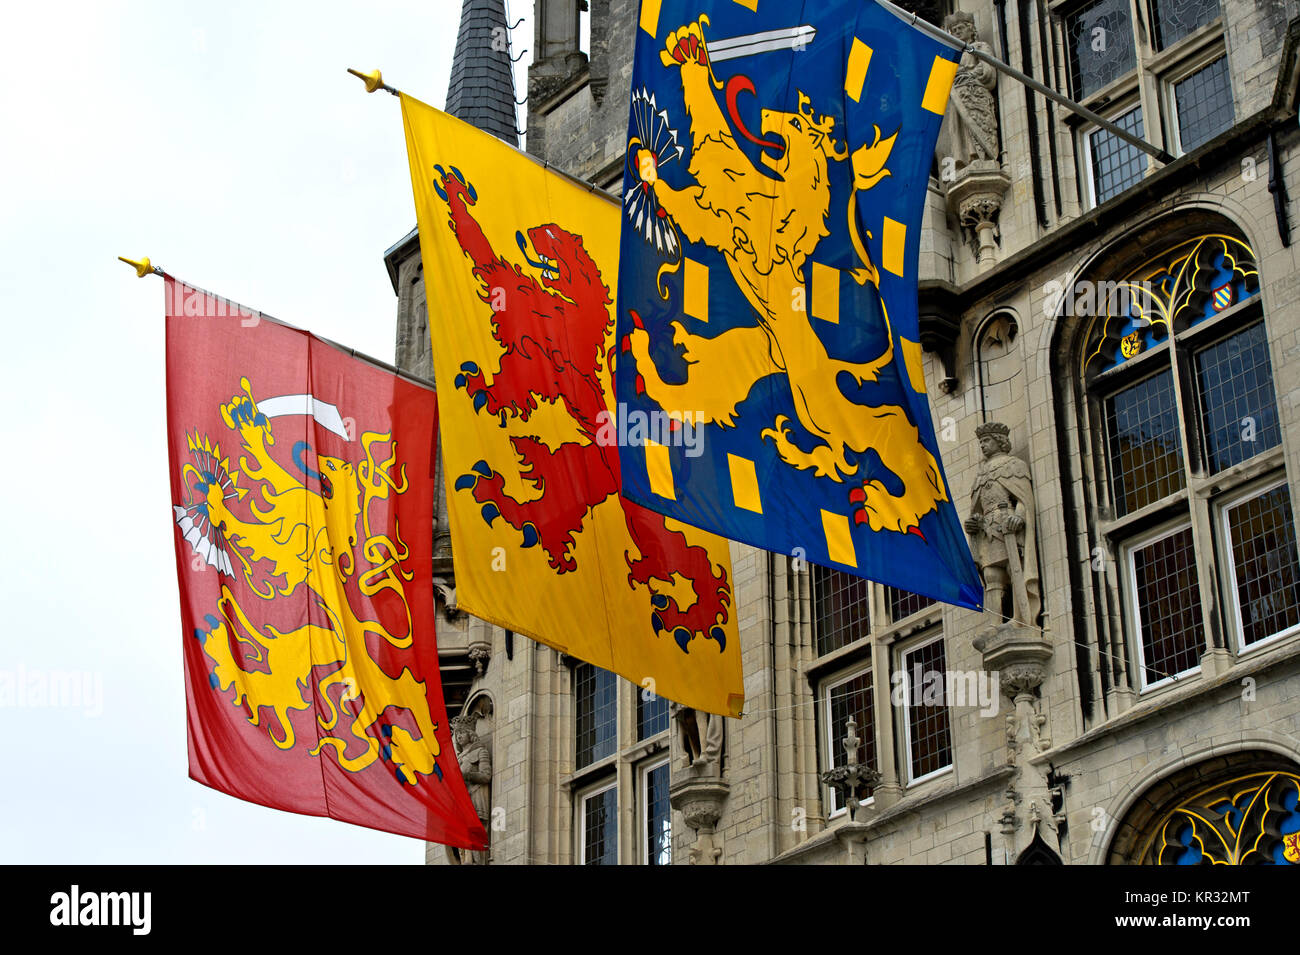 Drapeaux avec les bannières de la République néerlandaise, le comté de Hollande et le Royaume des Pays-Bas à l'hôtel de ville gothique, Gouda, Pays-Bas Banque D'Images